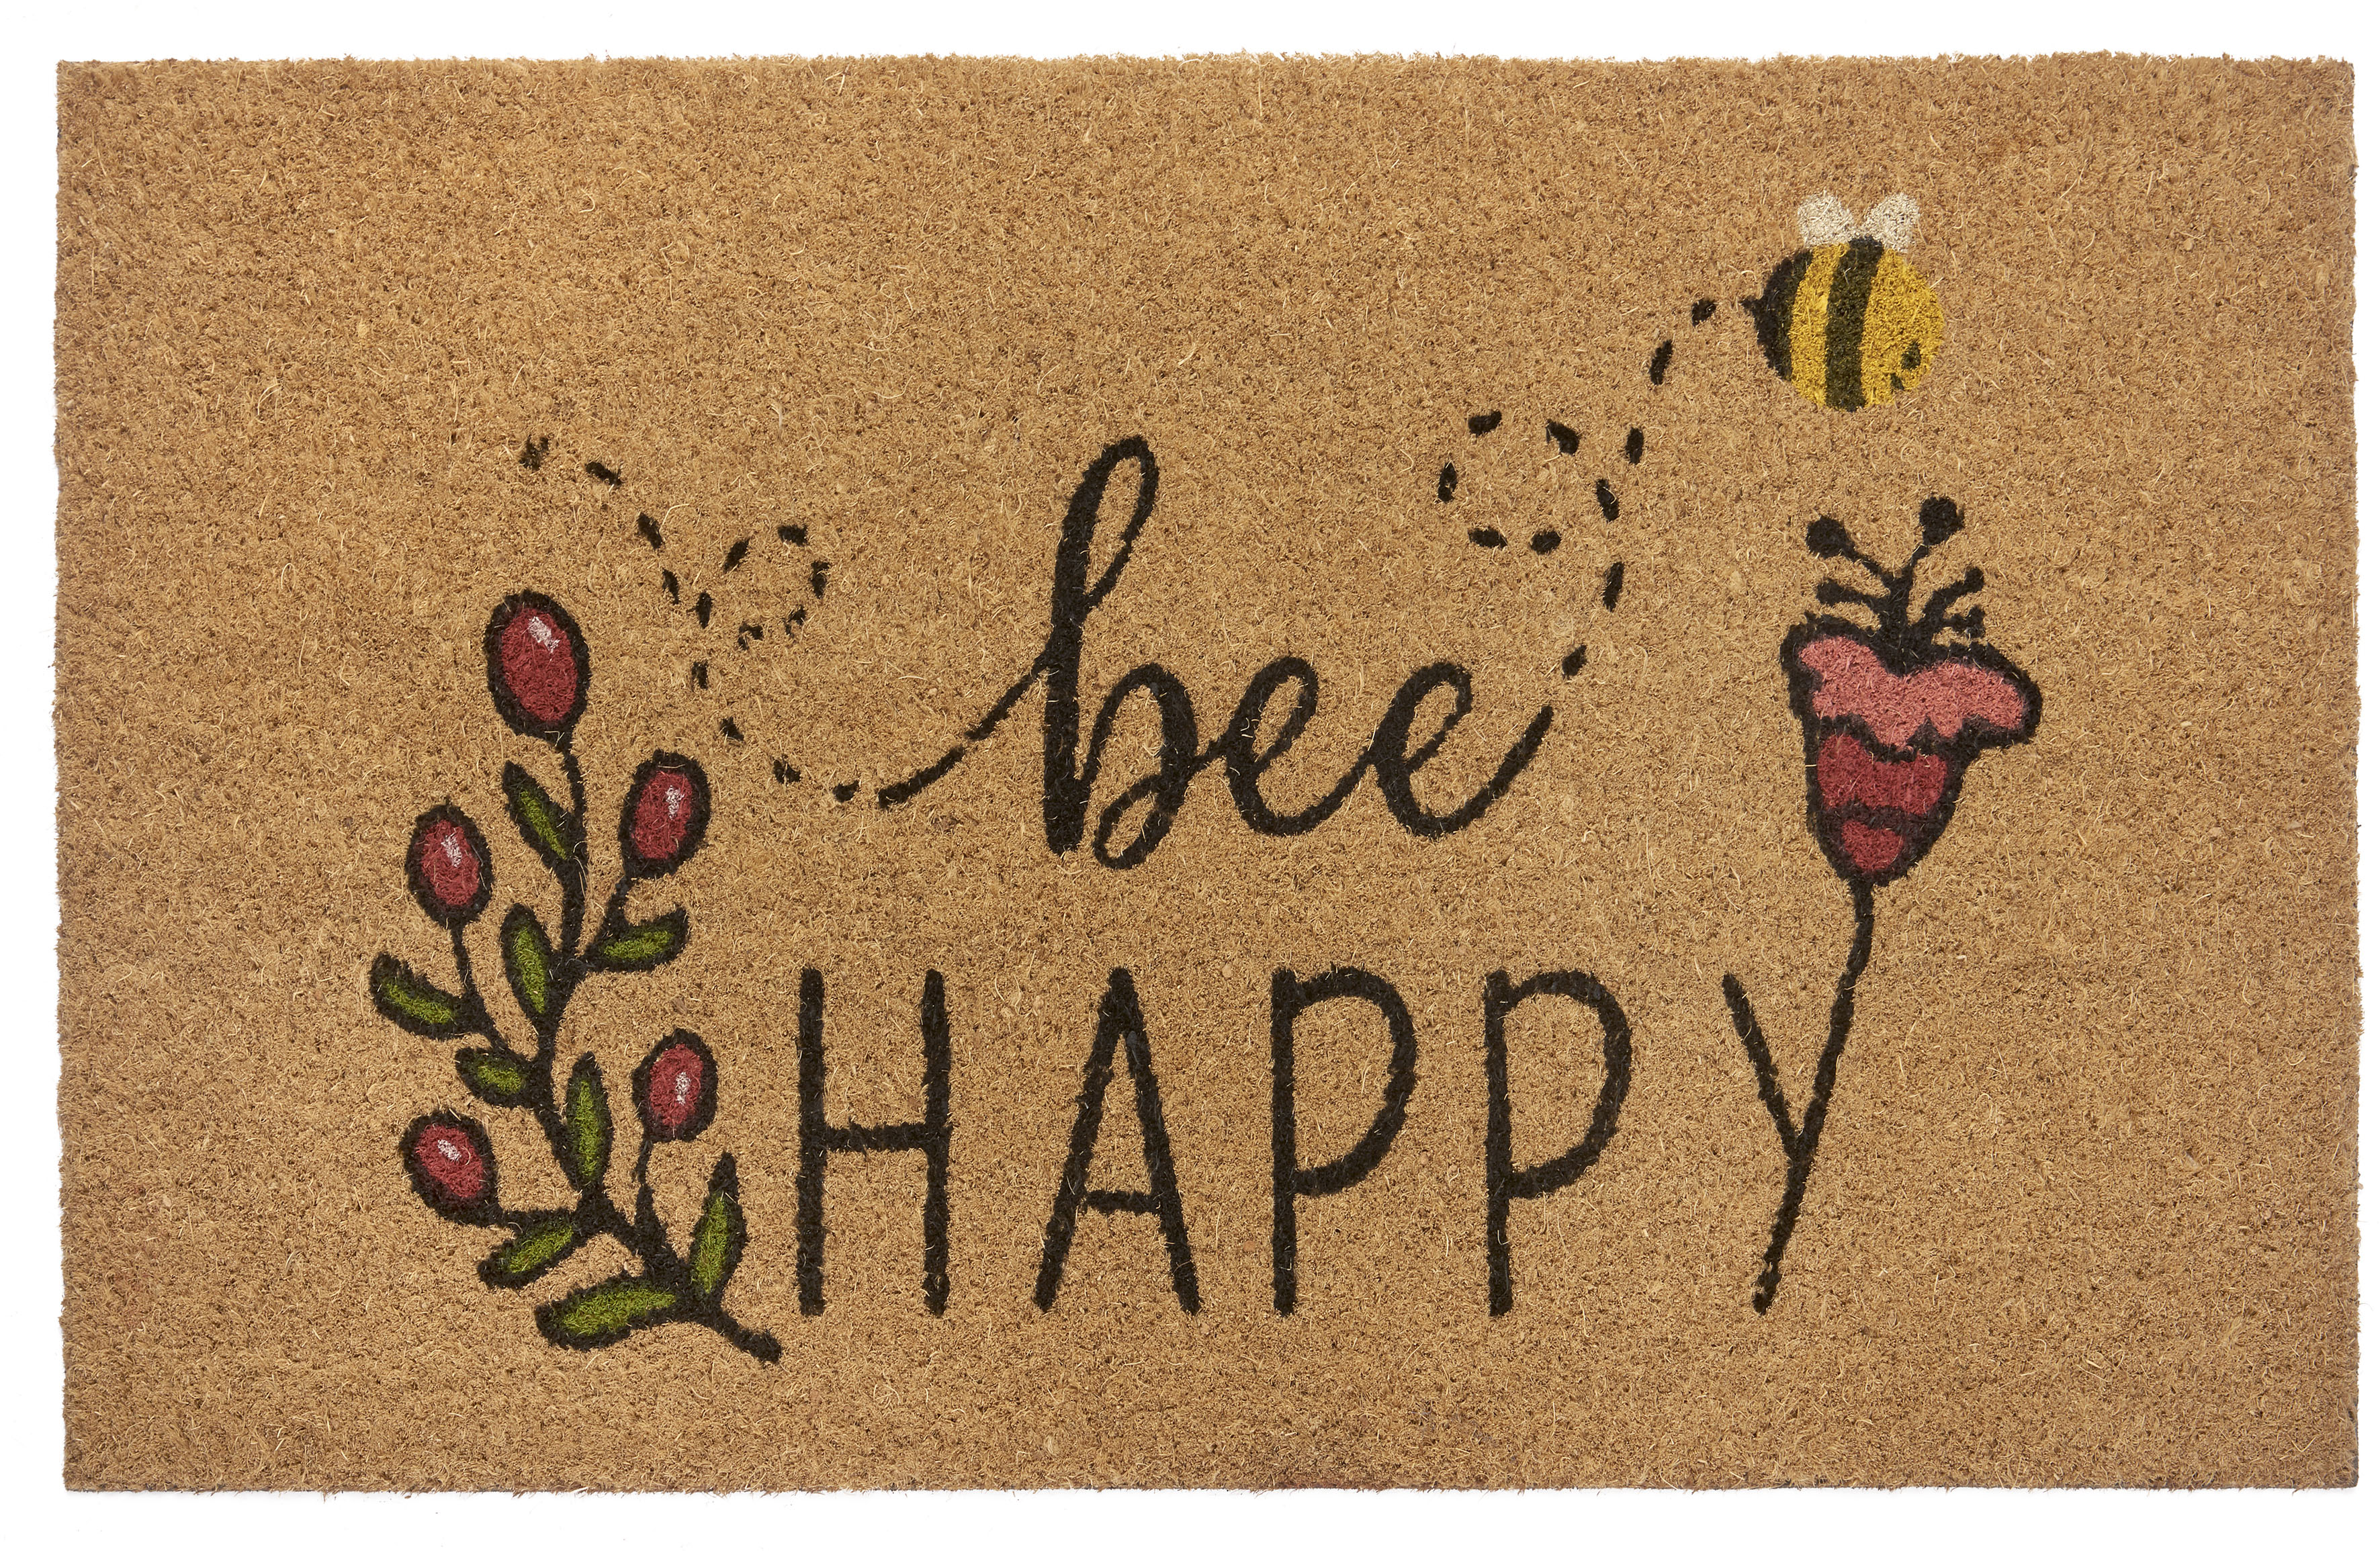 HANSE Home Fußmatte »Bee Happy«, rechteckig, Kokos, Schmutzfangmatte, Outdo günstig online kaufen